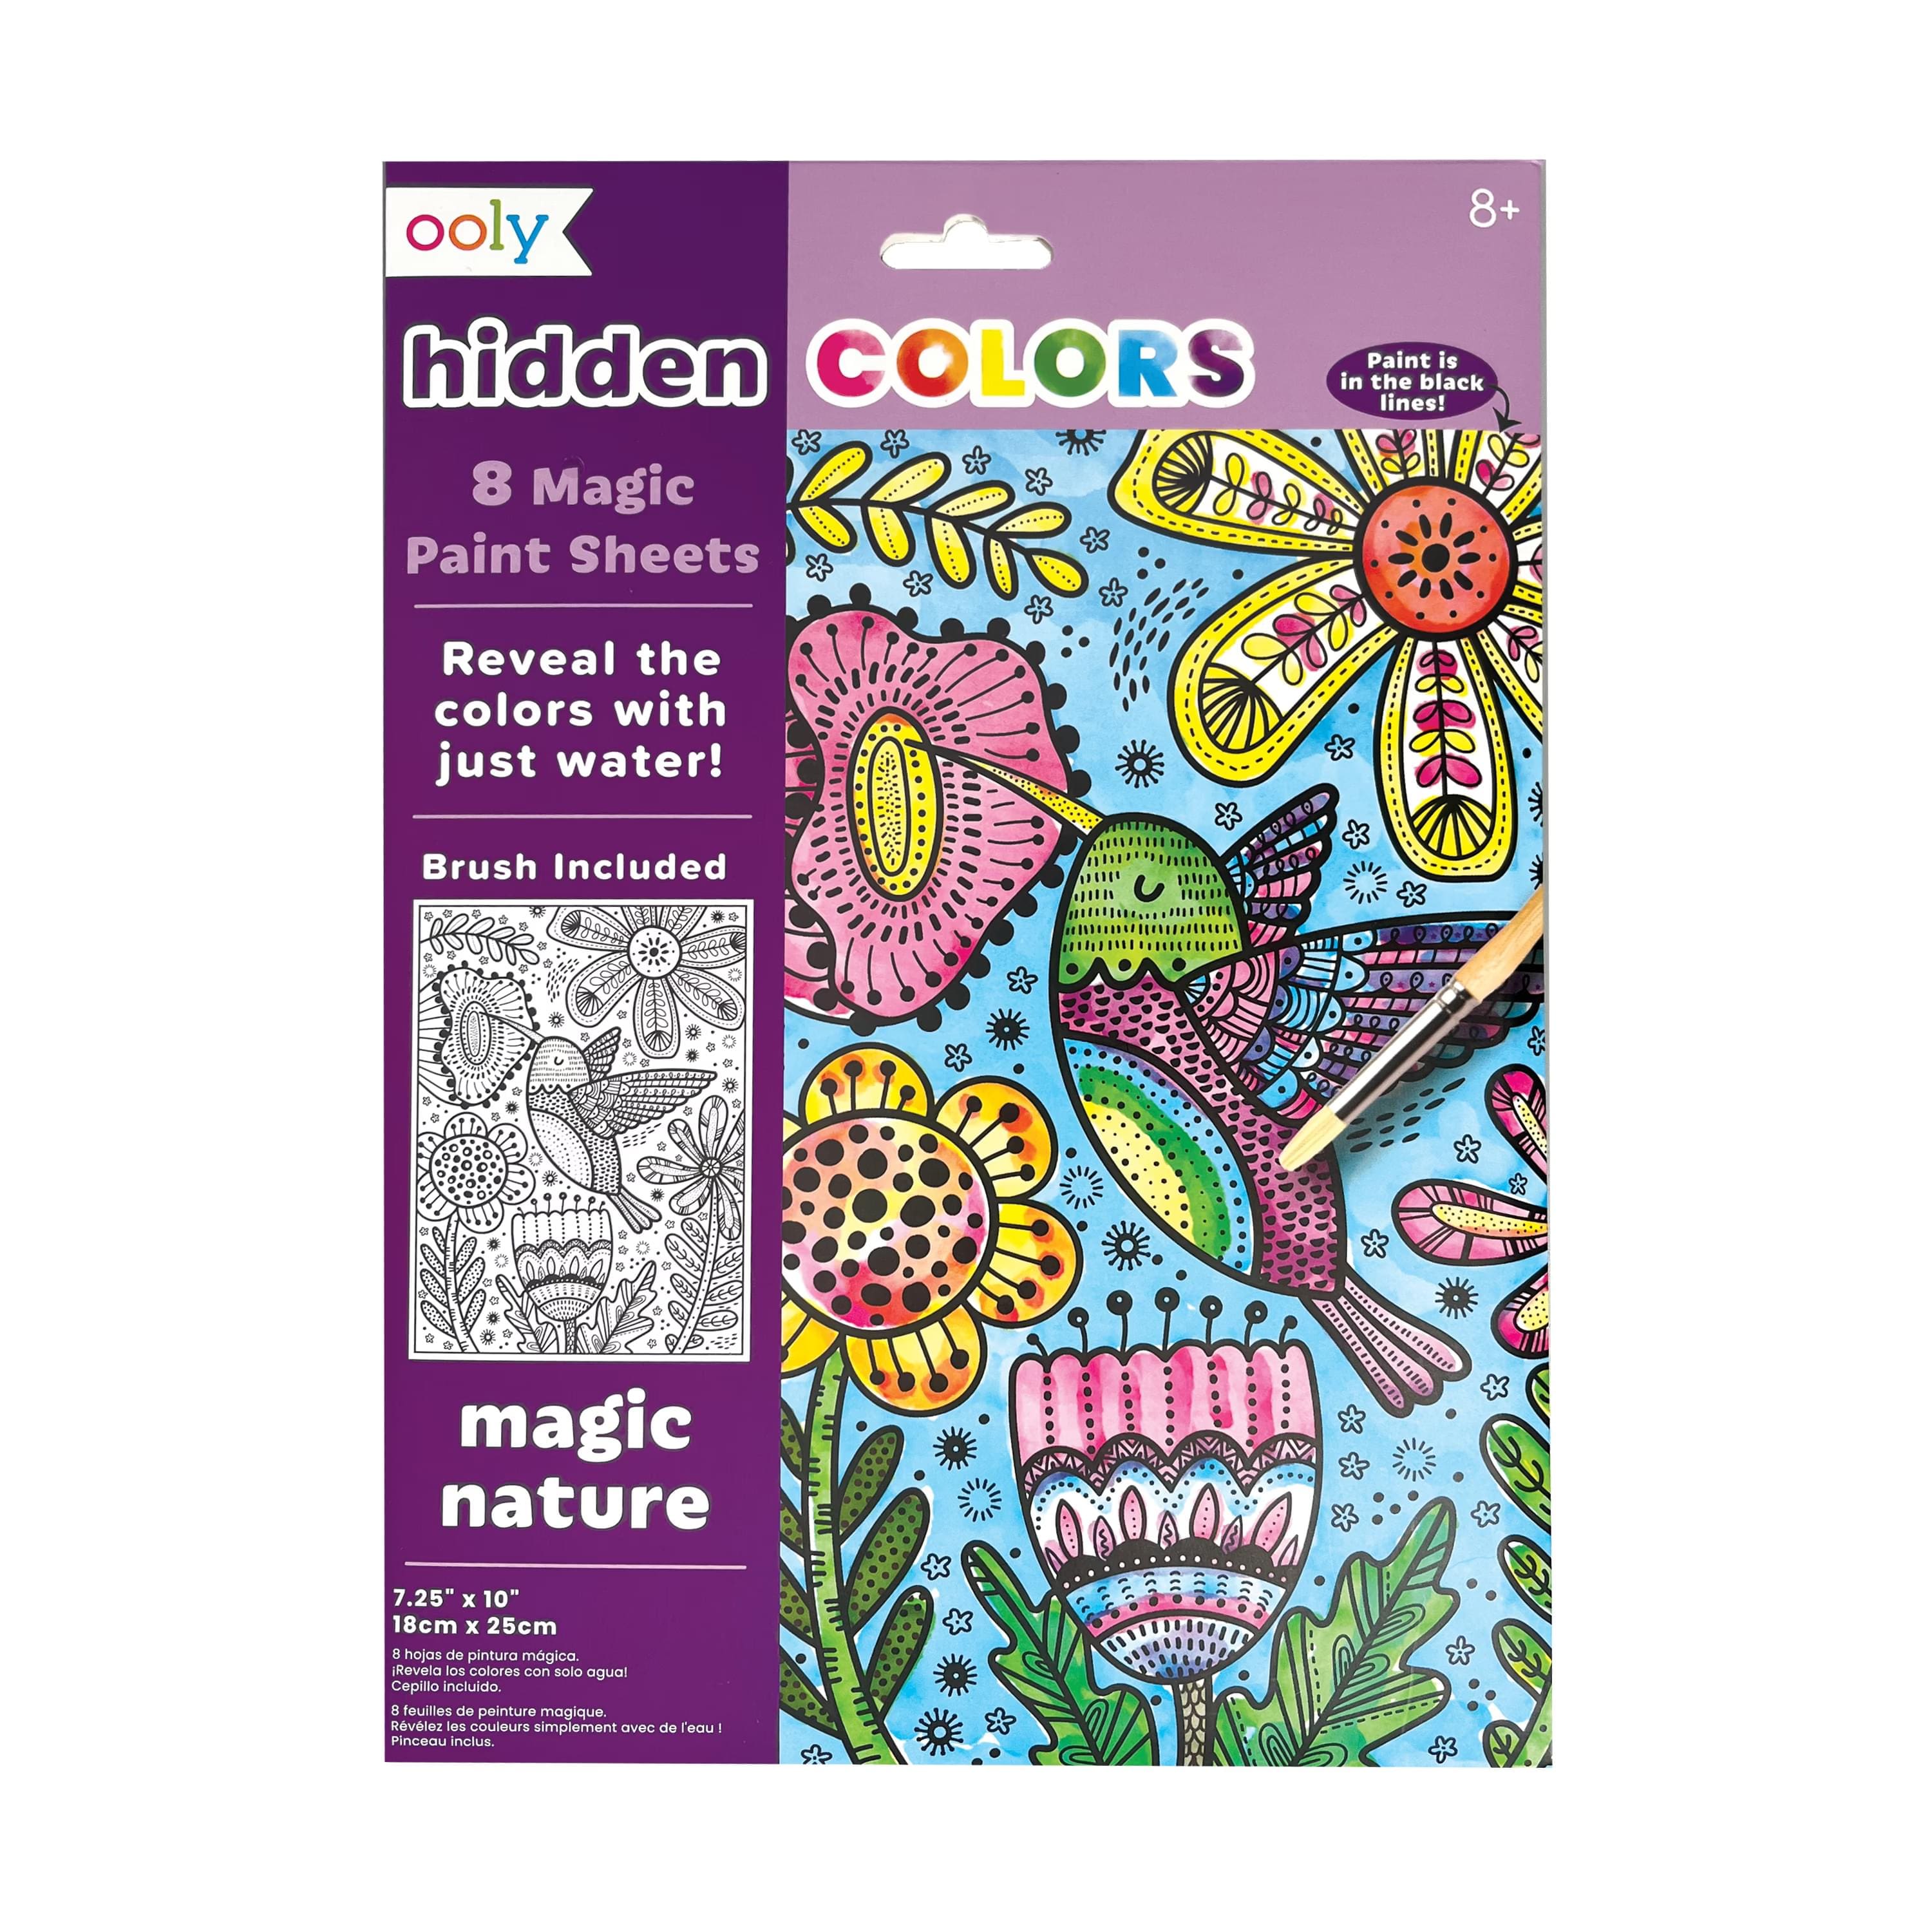 OOLY Hidden Colors Magic Nature Magic Paint Sheets